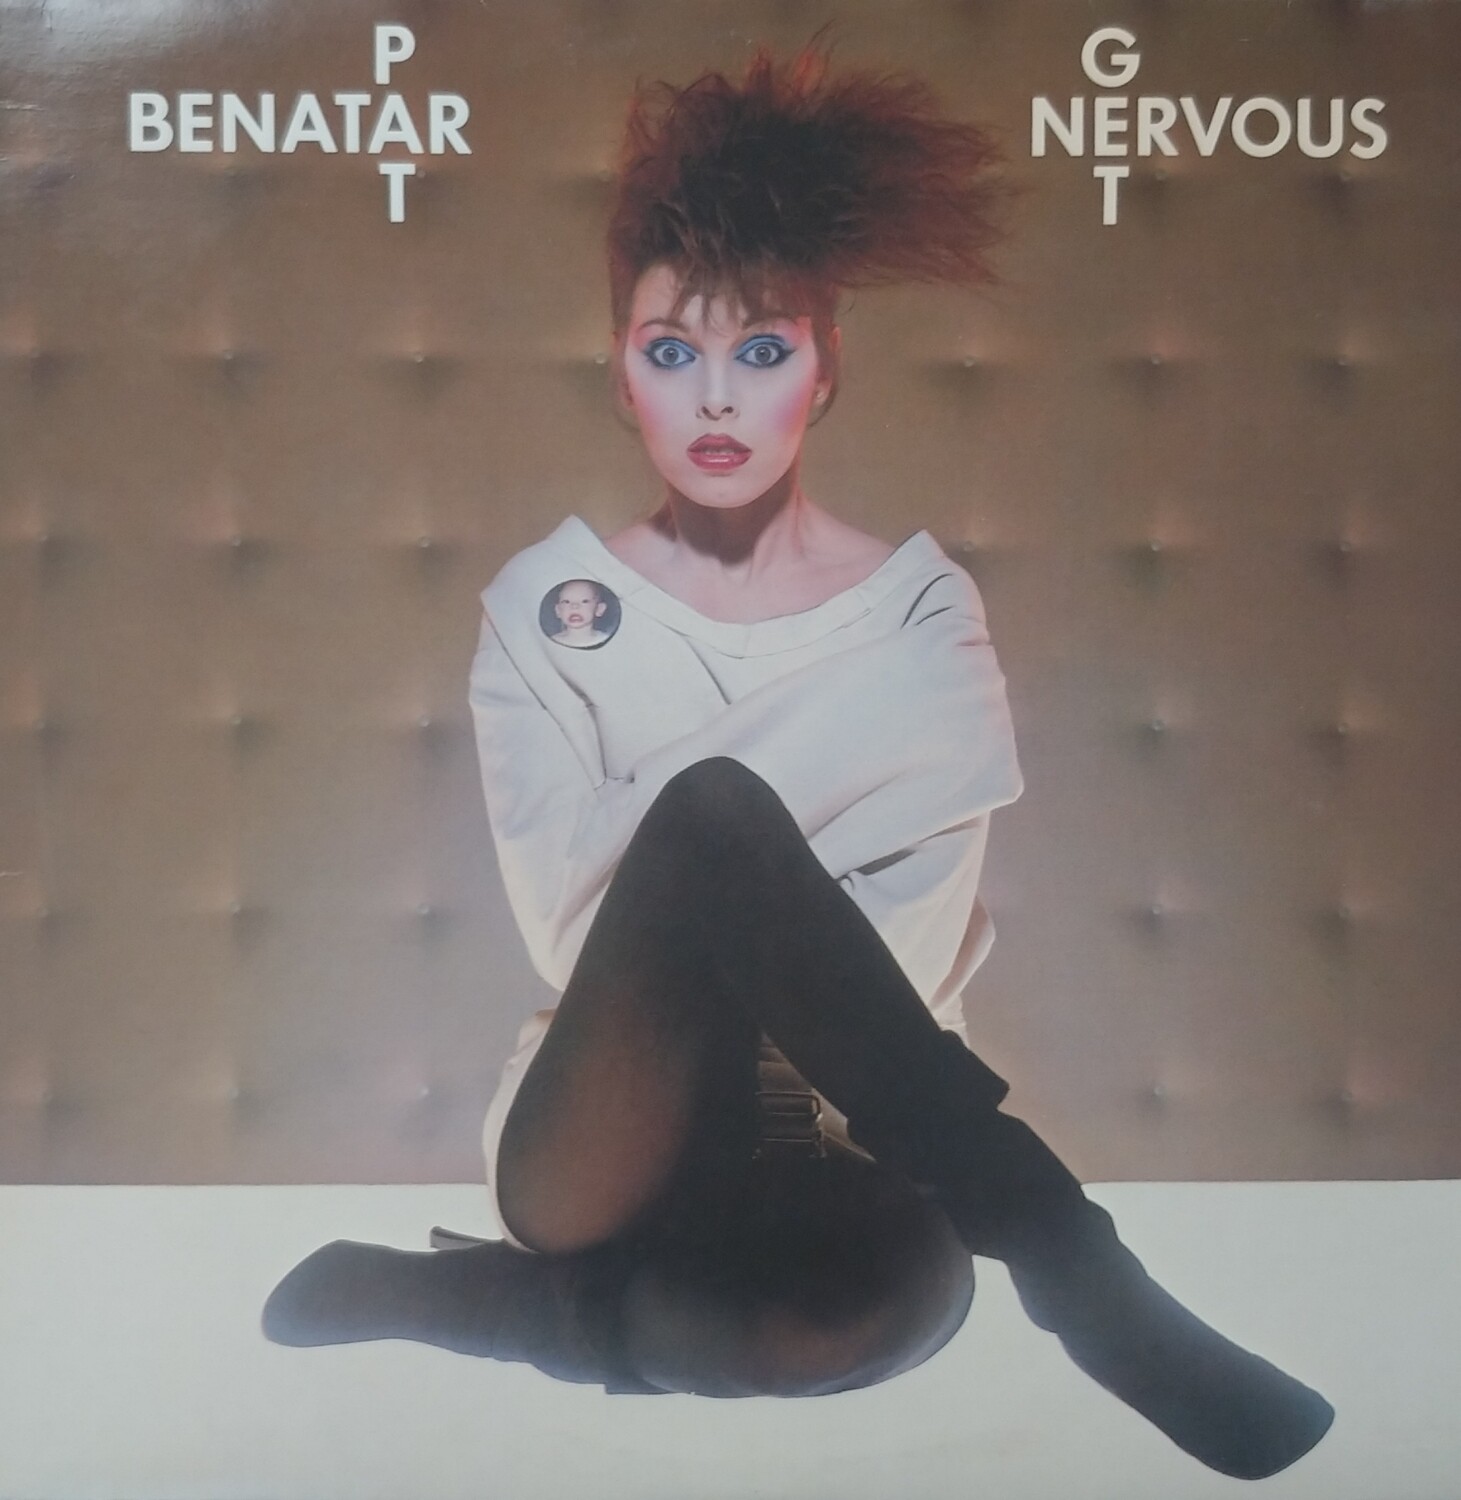 Pat Benatar - Get nervous